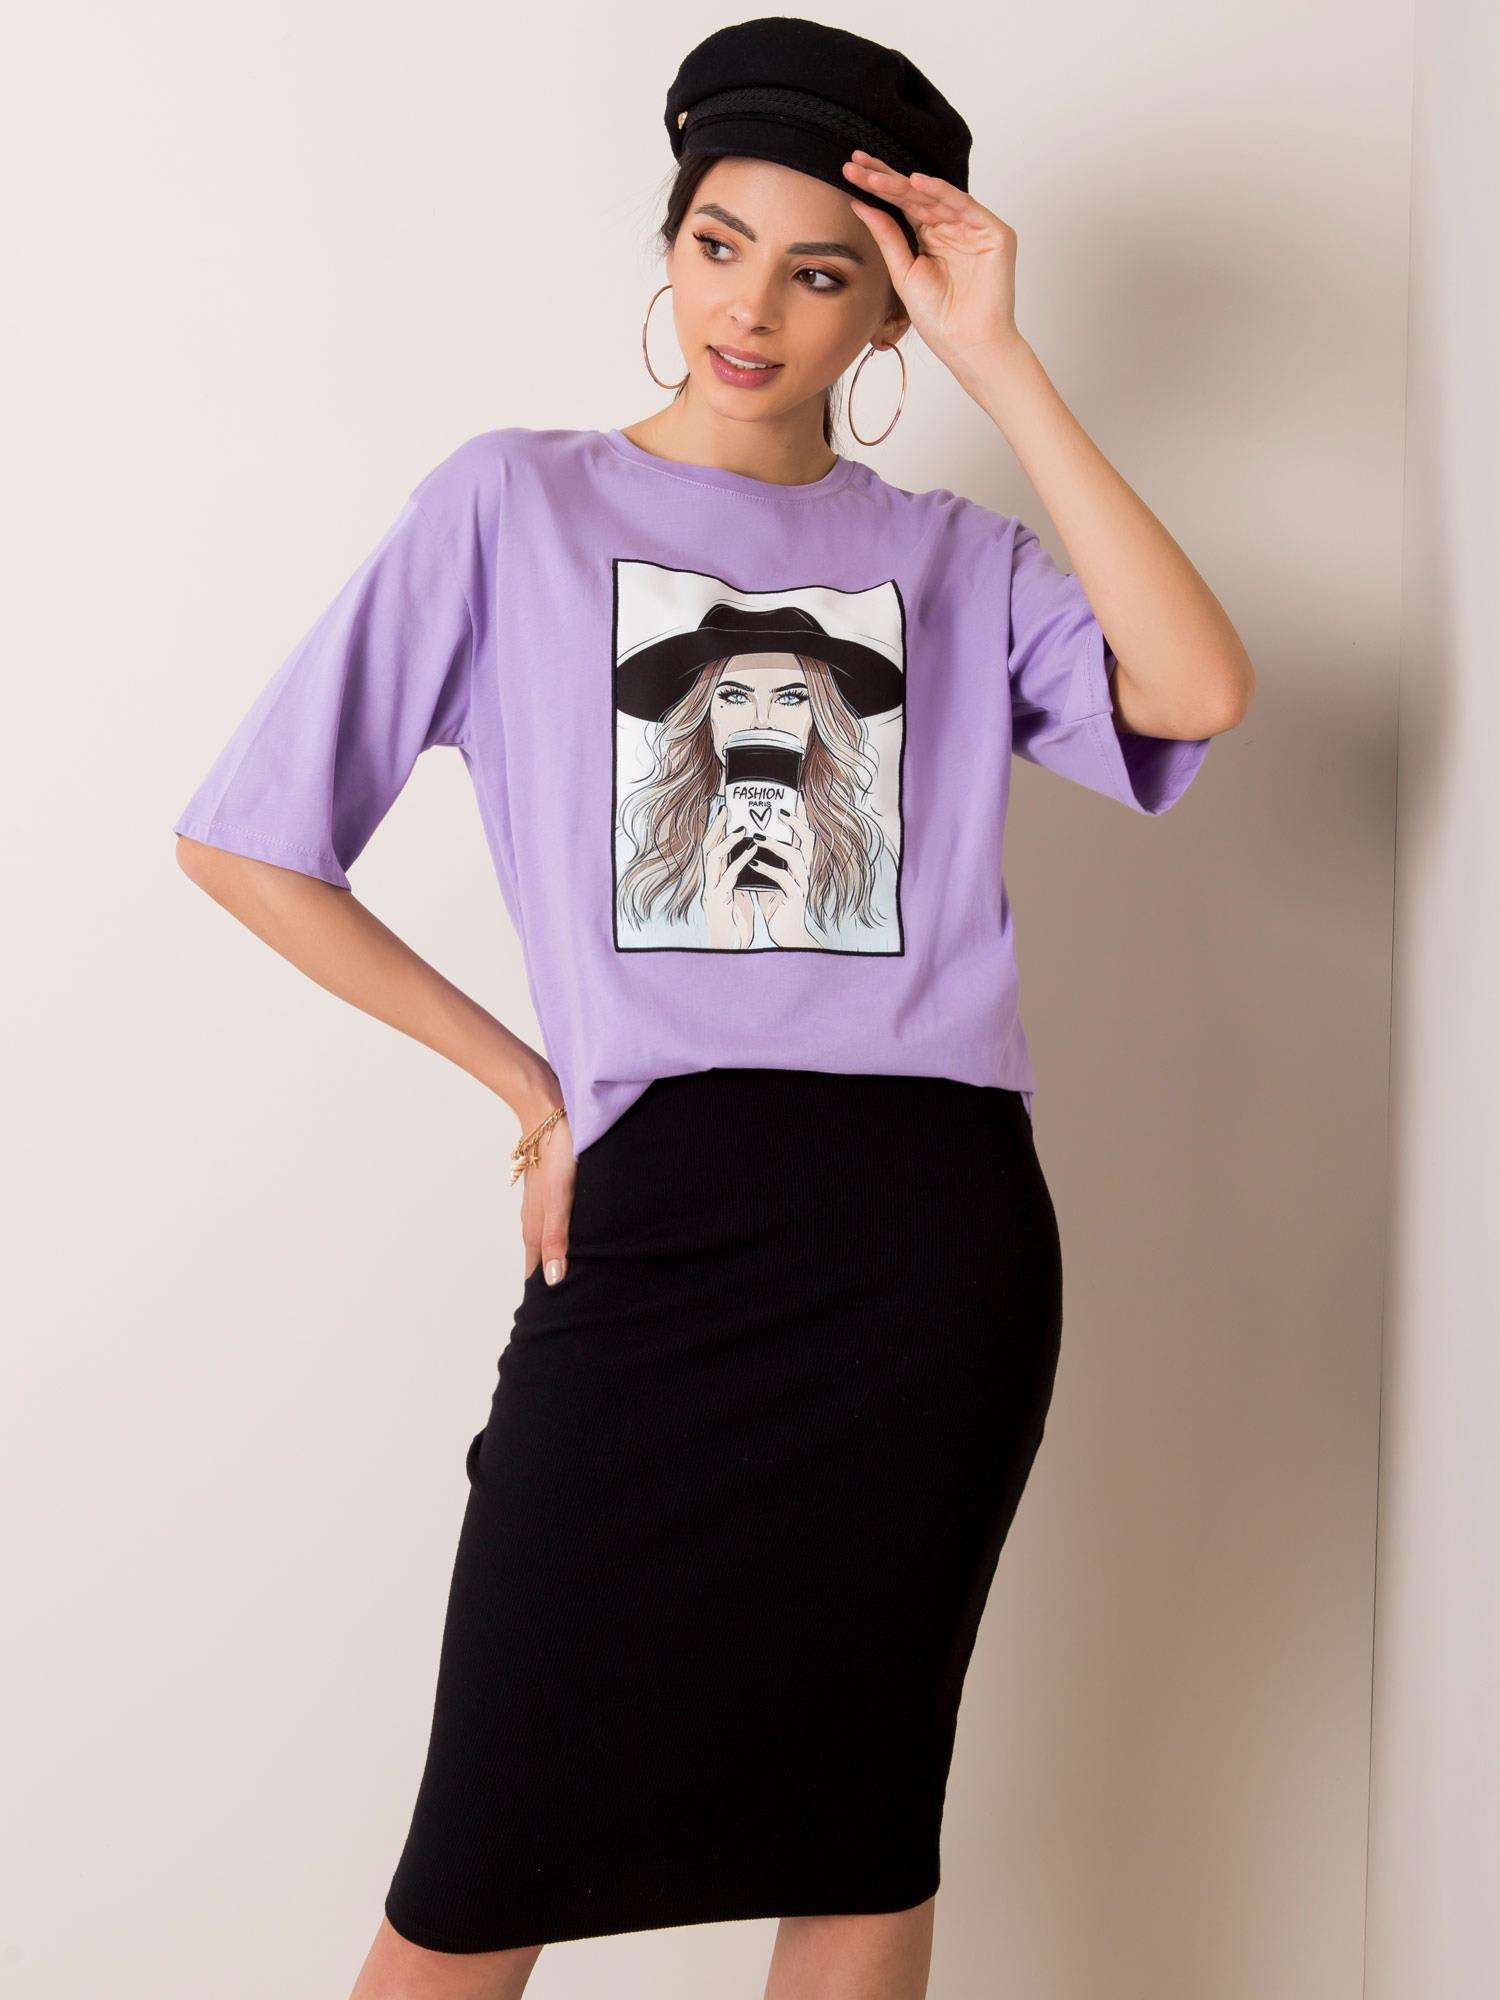 Fialové dámské tričko s motivem Dívky 157-TS-3693.51P-purple Velikost: S